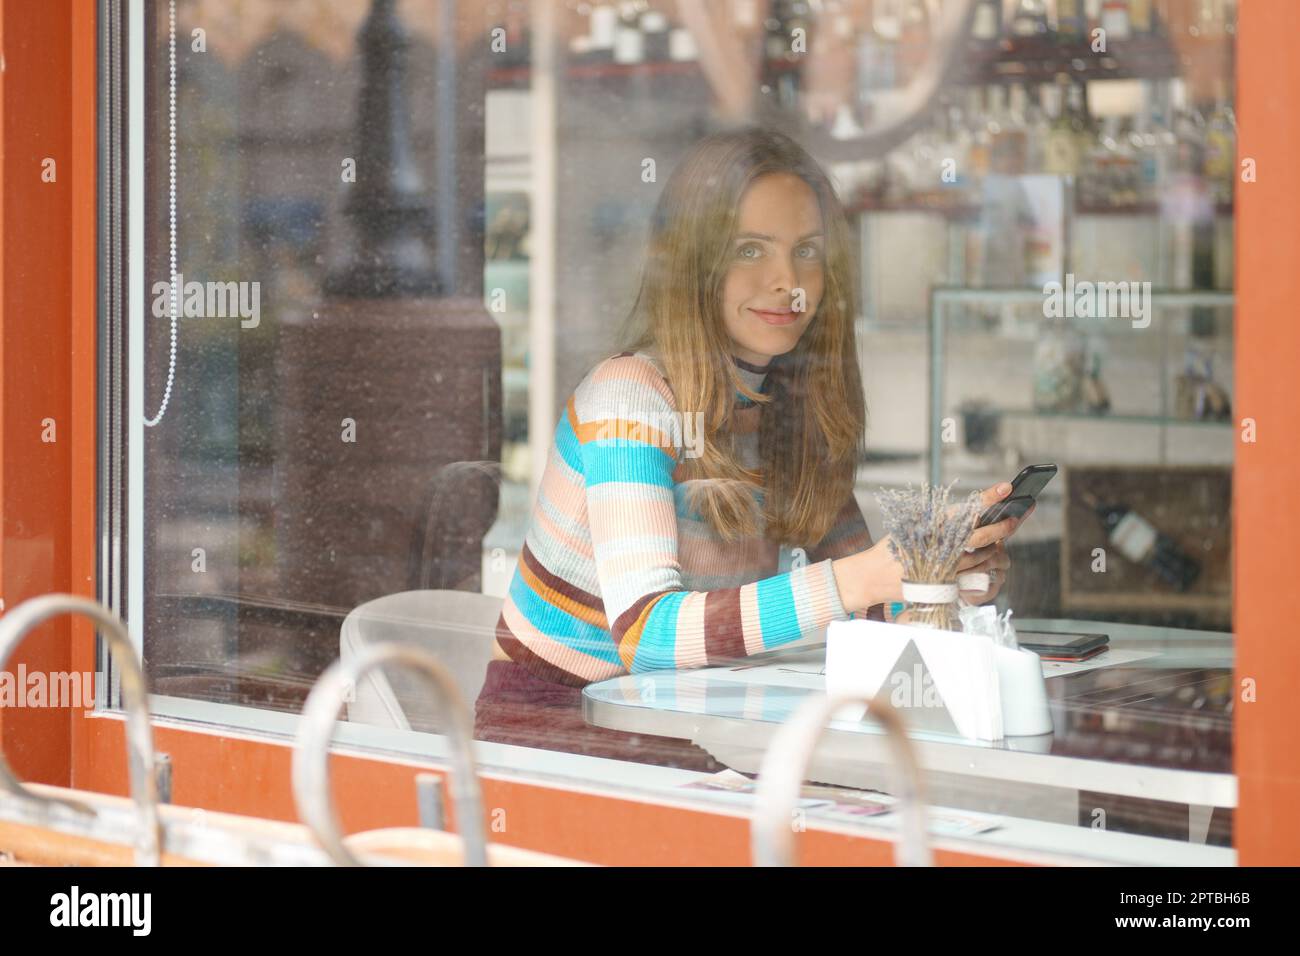 Jolie fille aux cheveux longs, assise dans une caffe et bavardant sur un téléphone portable. Photo prise de l'extérieur, avec une vue à travers la fenêtre. Banque D'Images